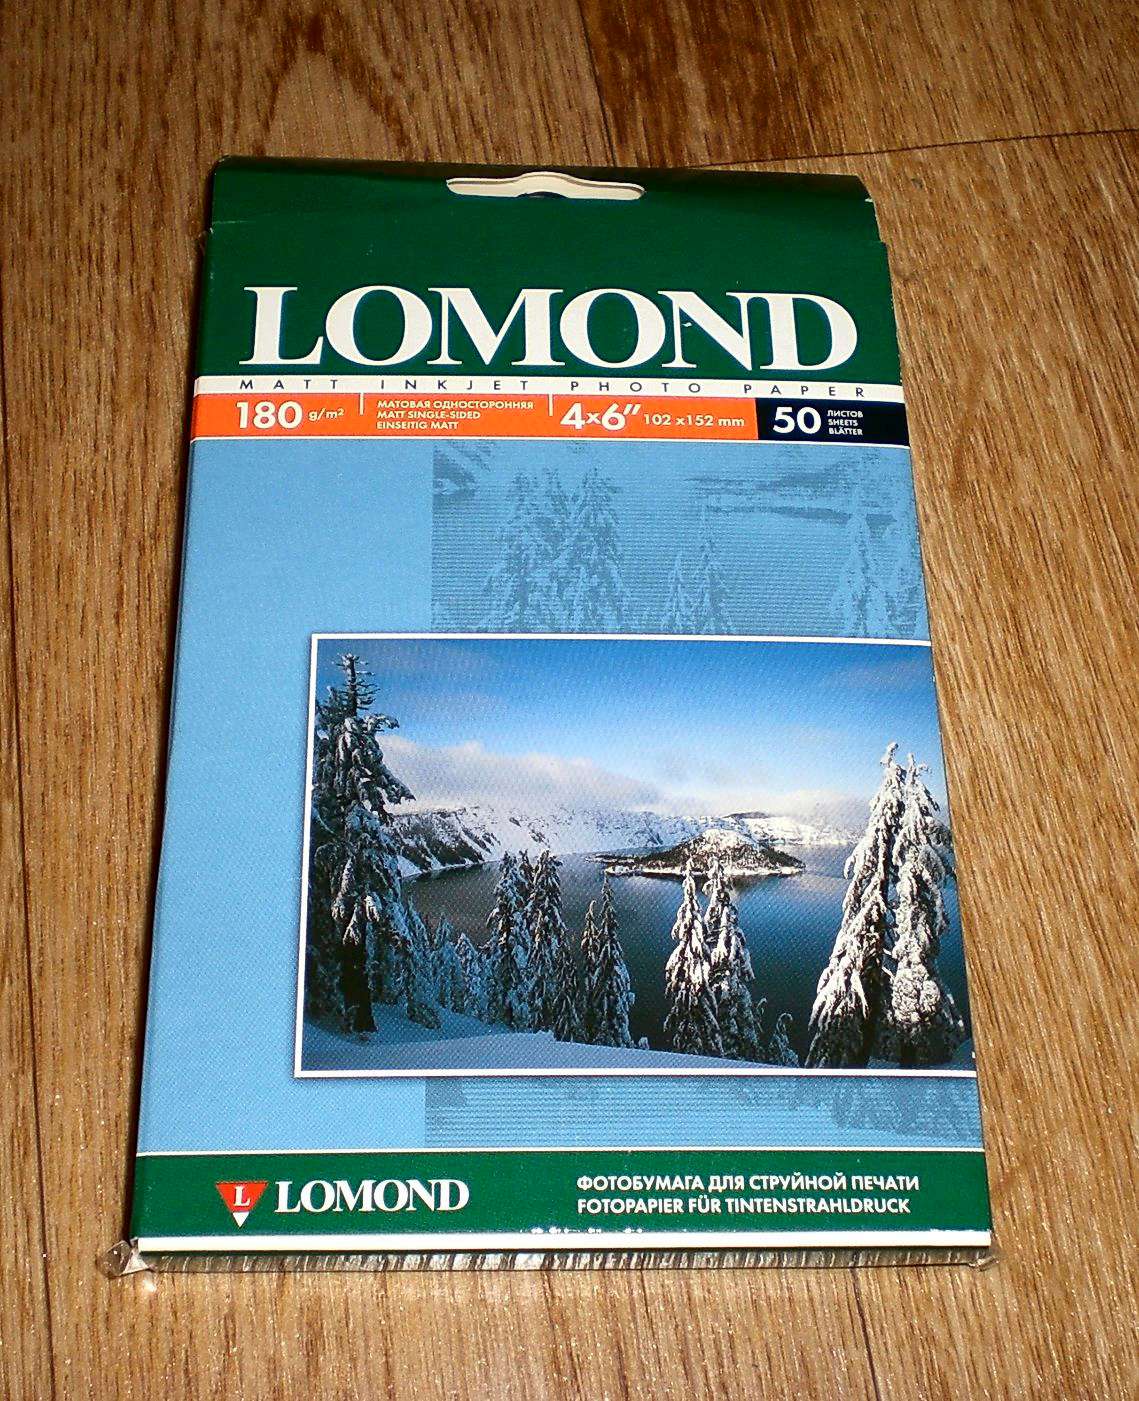 Матовая бумага Lomond 180г/м. Lomond матовая 180. Фотобумага "Lomond" а4 180г/м2 50л., матовая односторонняя. Фотобумага Lomond (0934041).